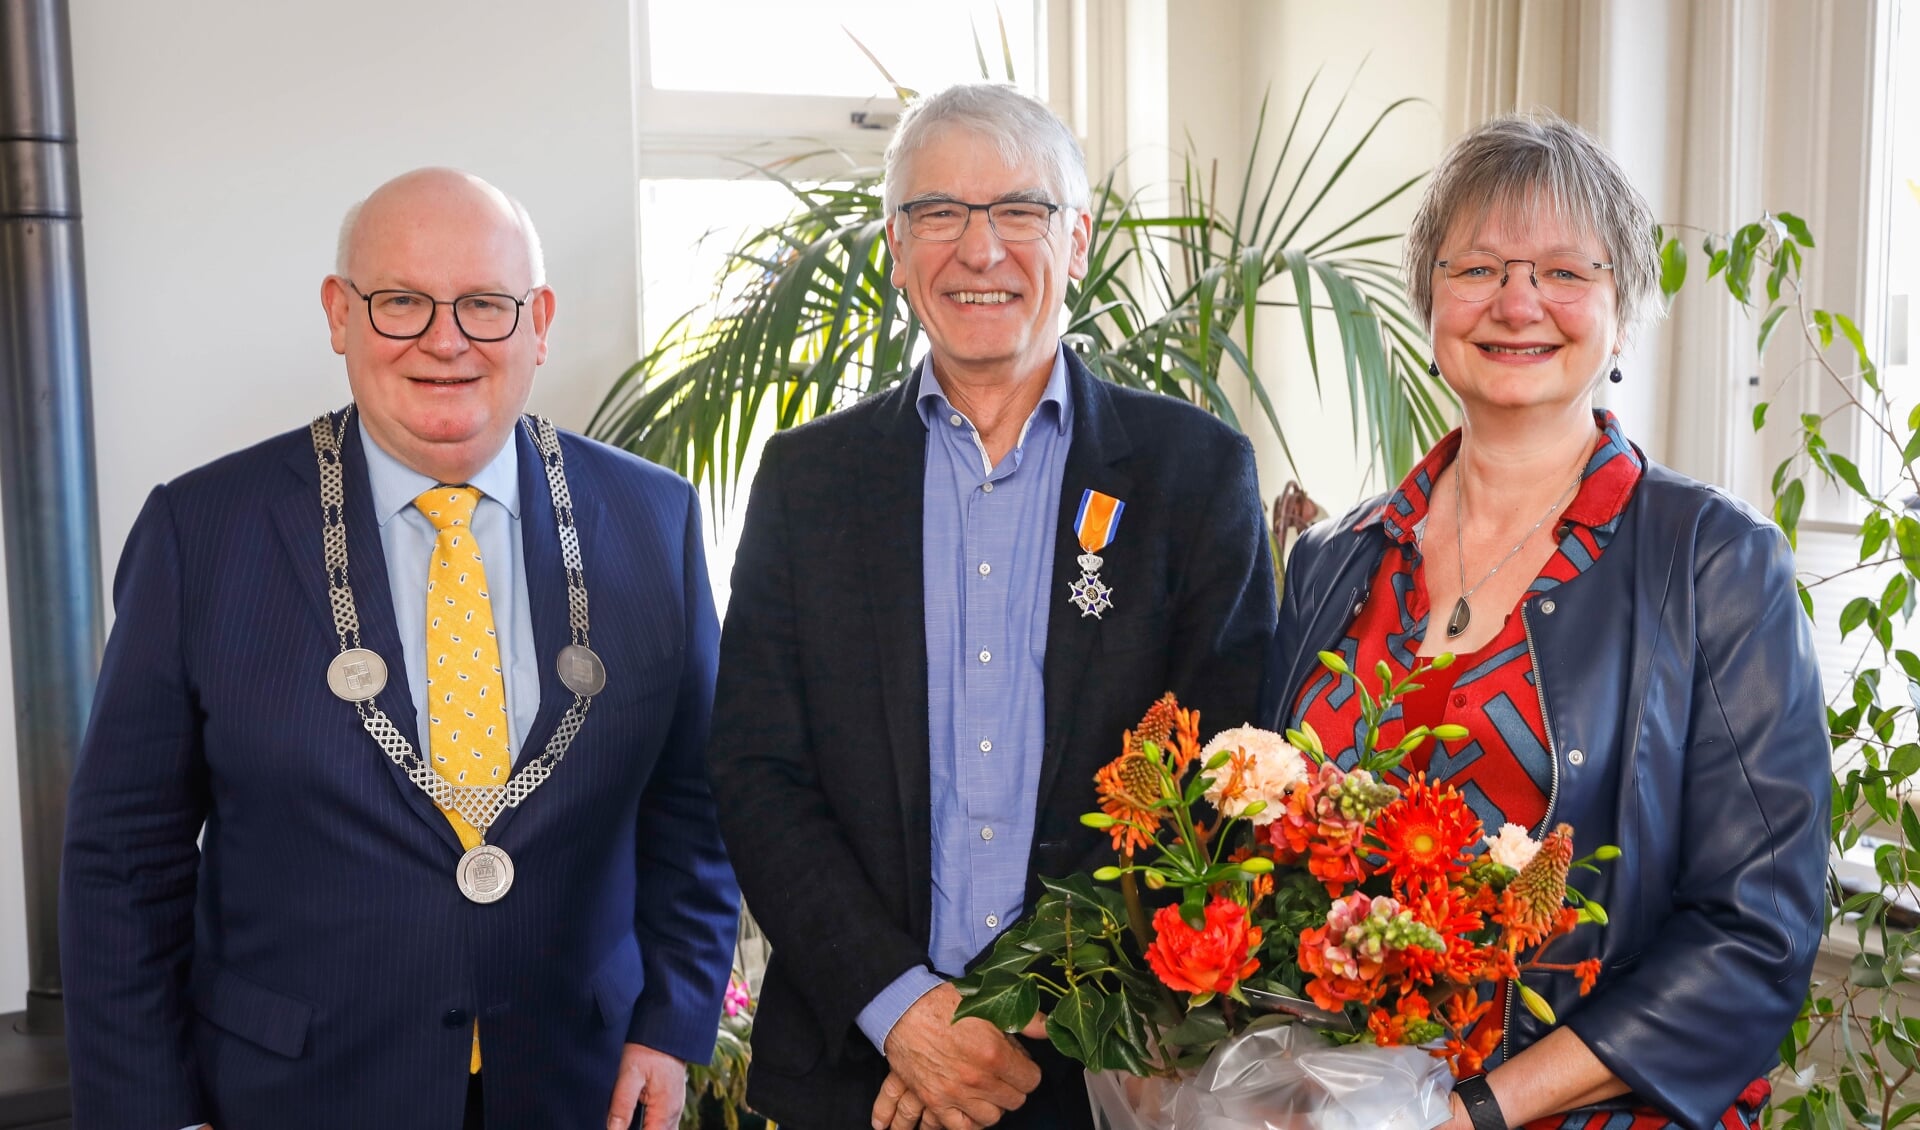 De heer Kwant ontving een koninklijke onderscheiding uit handen van burgemeester Backhuijs.